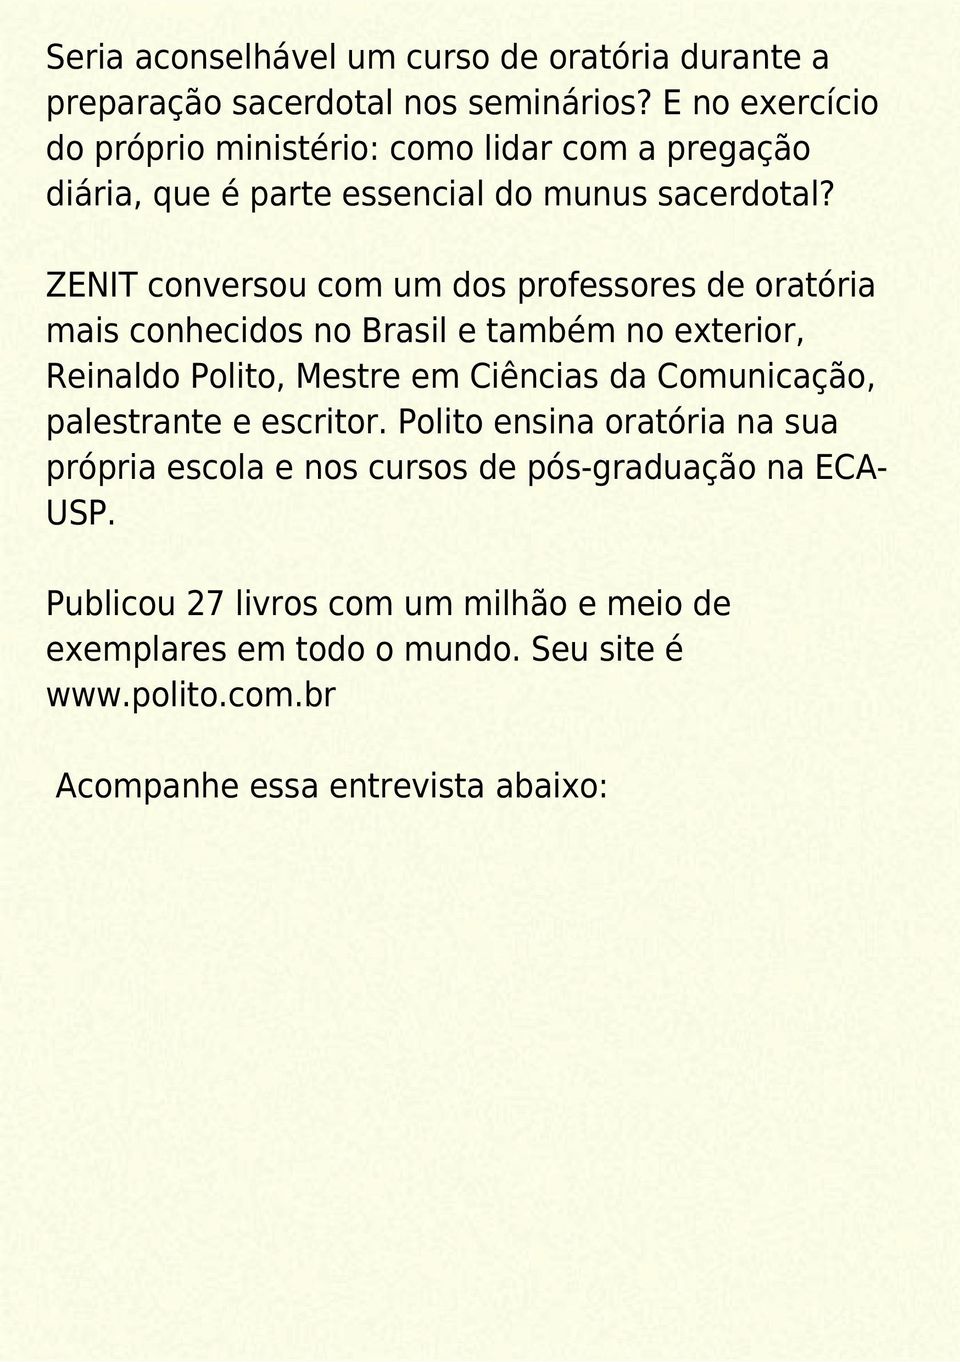 ZENIT conversou com um dos professores de oratória mais conhecidos no Brasil e também no exterior, Reinaldo Polito, Mestre em Ciências da